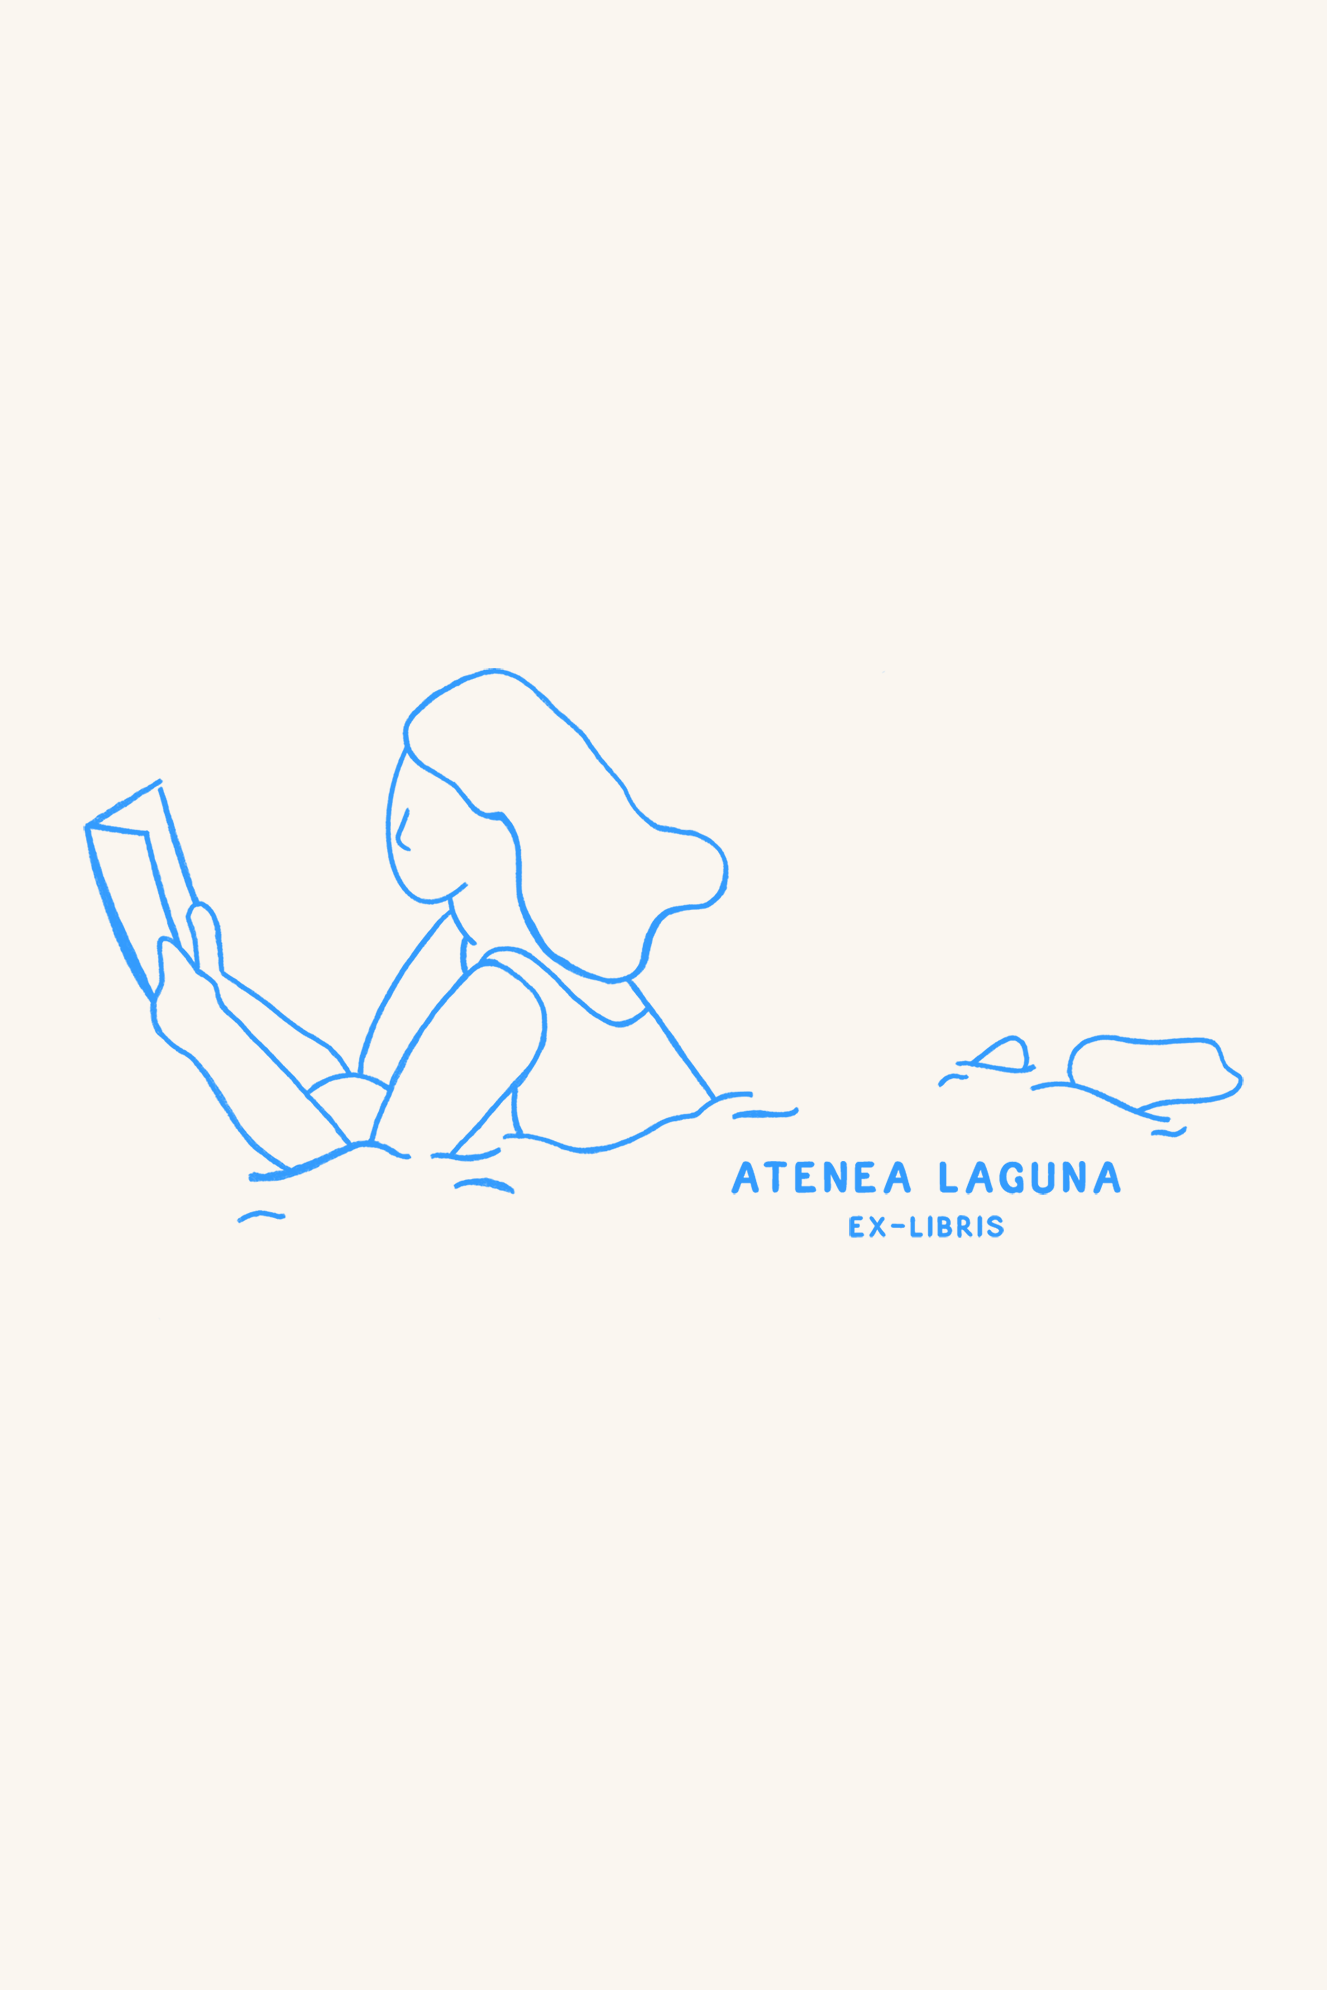 Dibujo de una mujer nadando y leyendo un libro al mismo tiempo